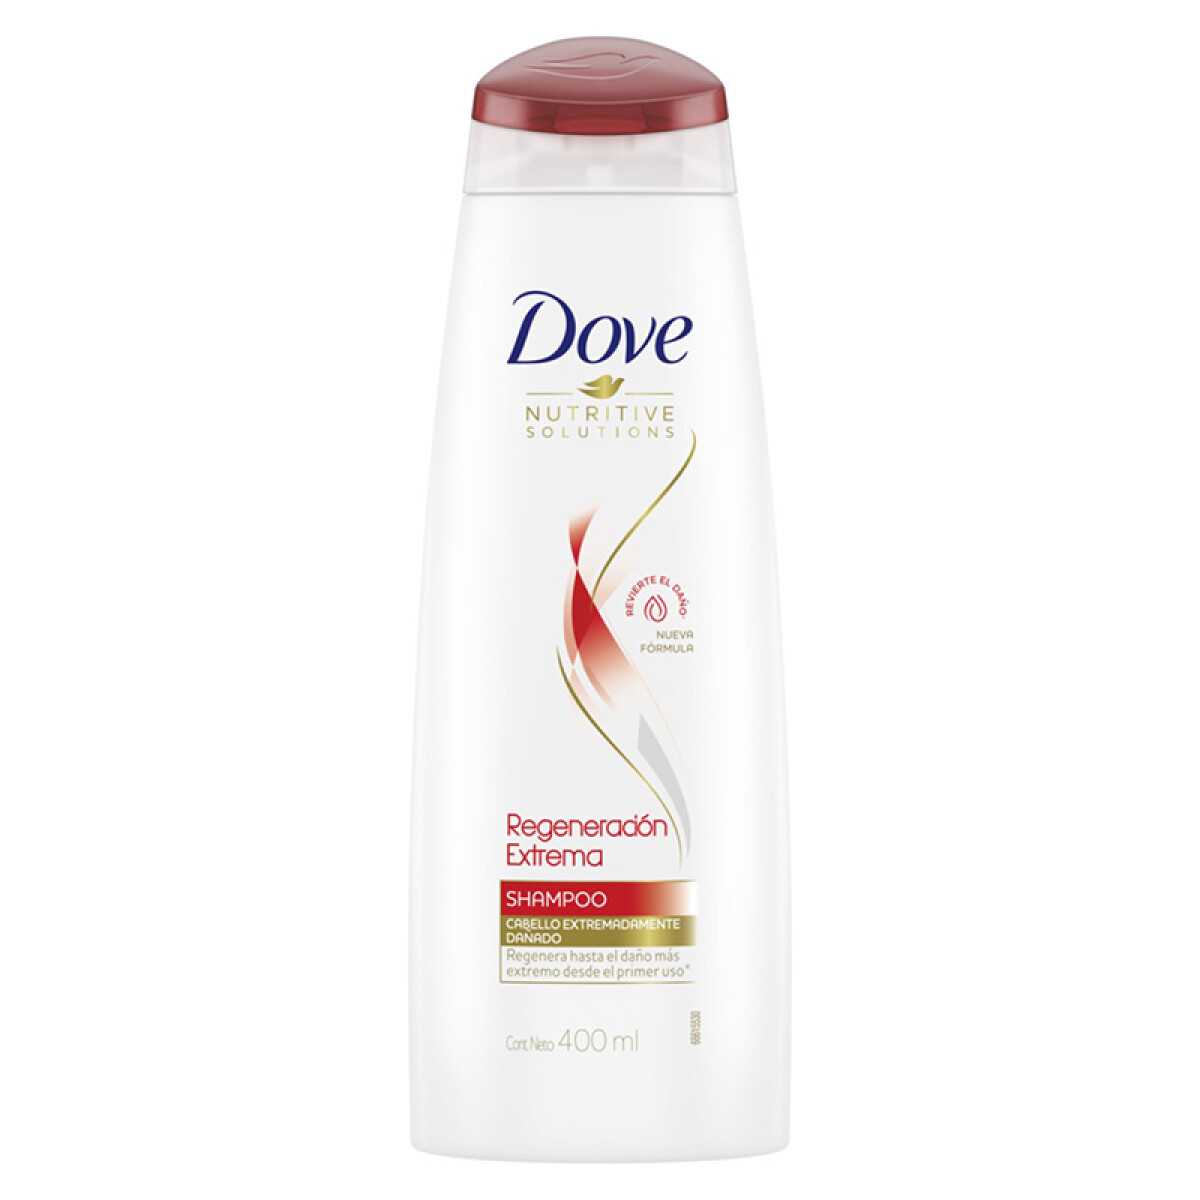 Dove shampoo - Regeneración extrema 400 ml 